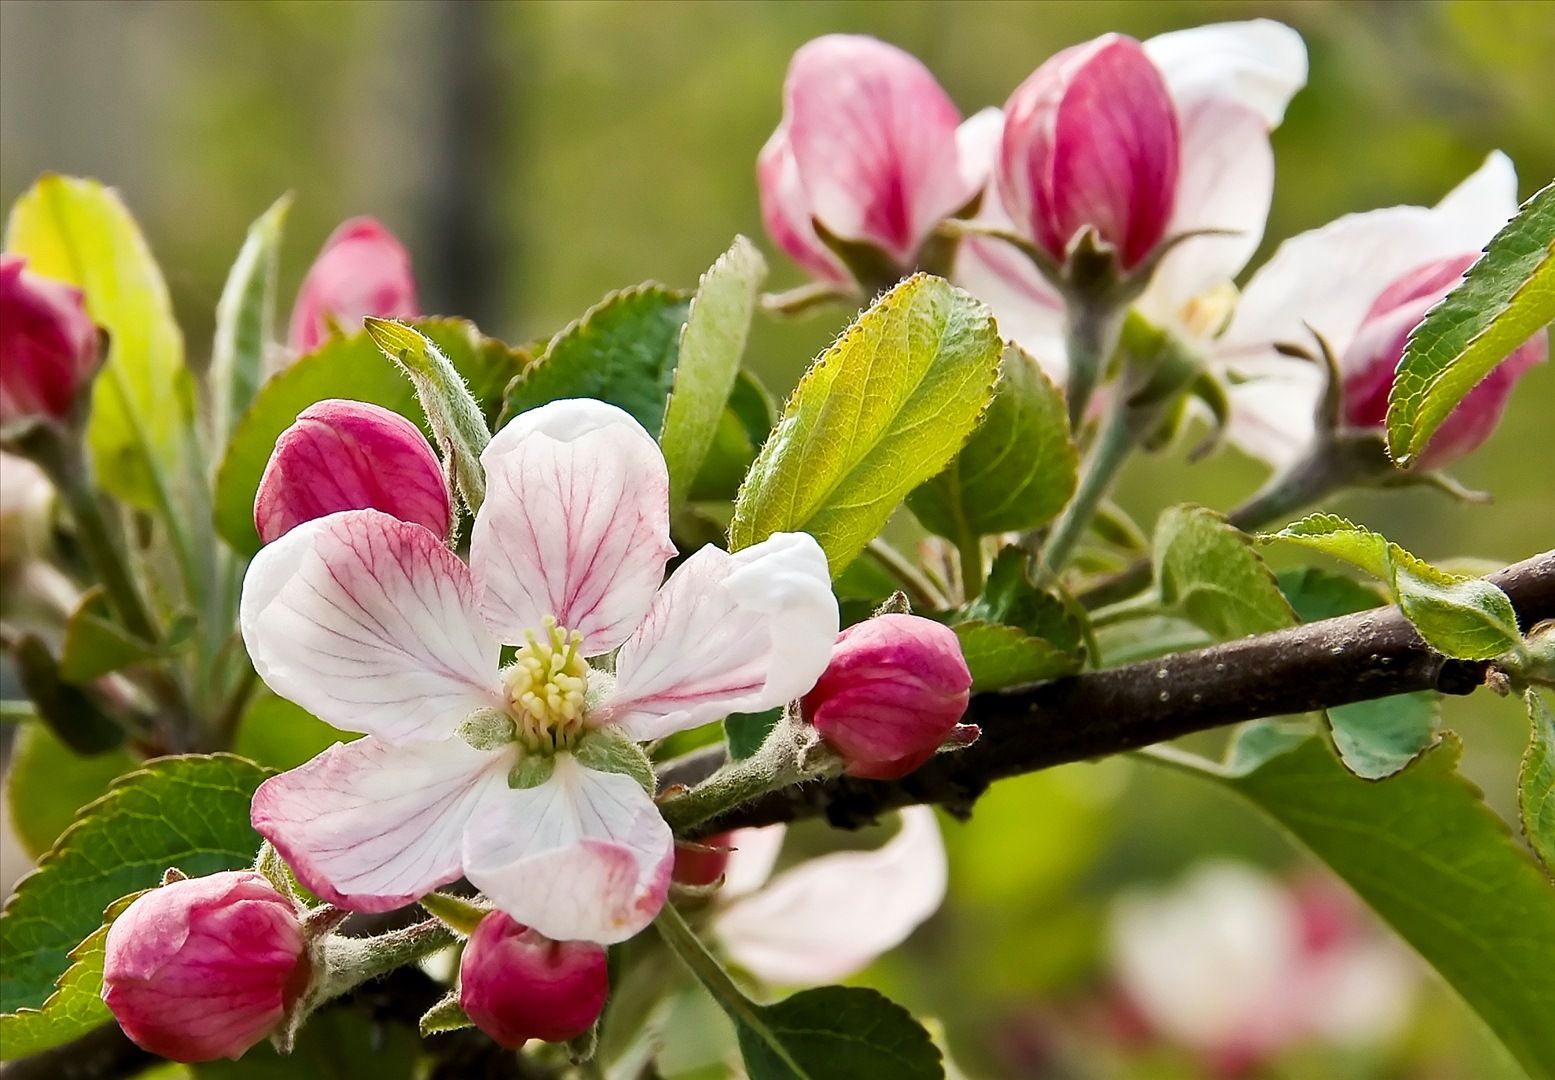 عکس پروفایل از غنچه های صورتی سیب و شکوفه های سفید با هاله سرخ رنگ